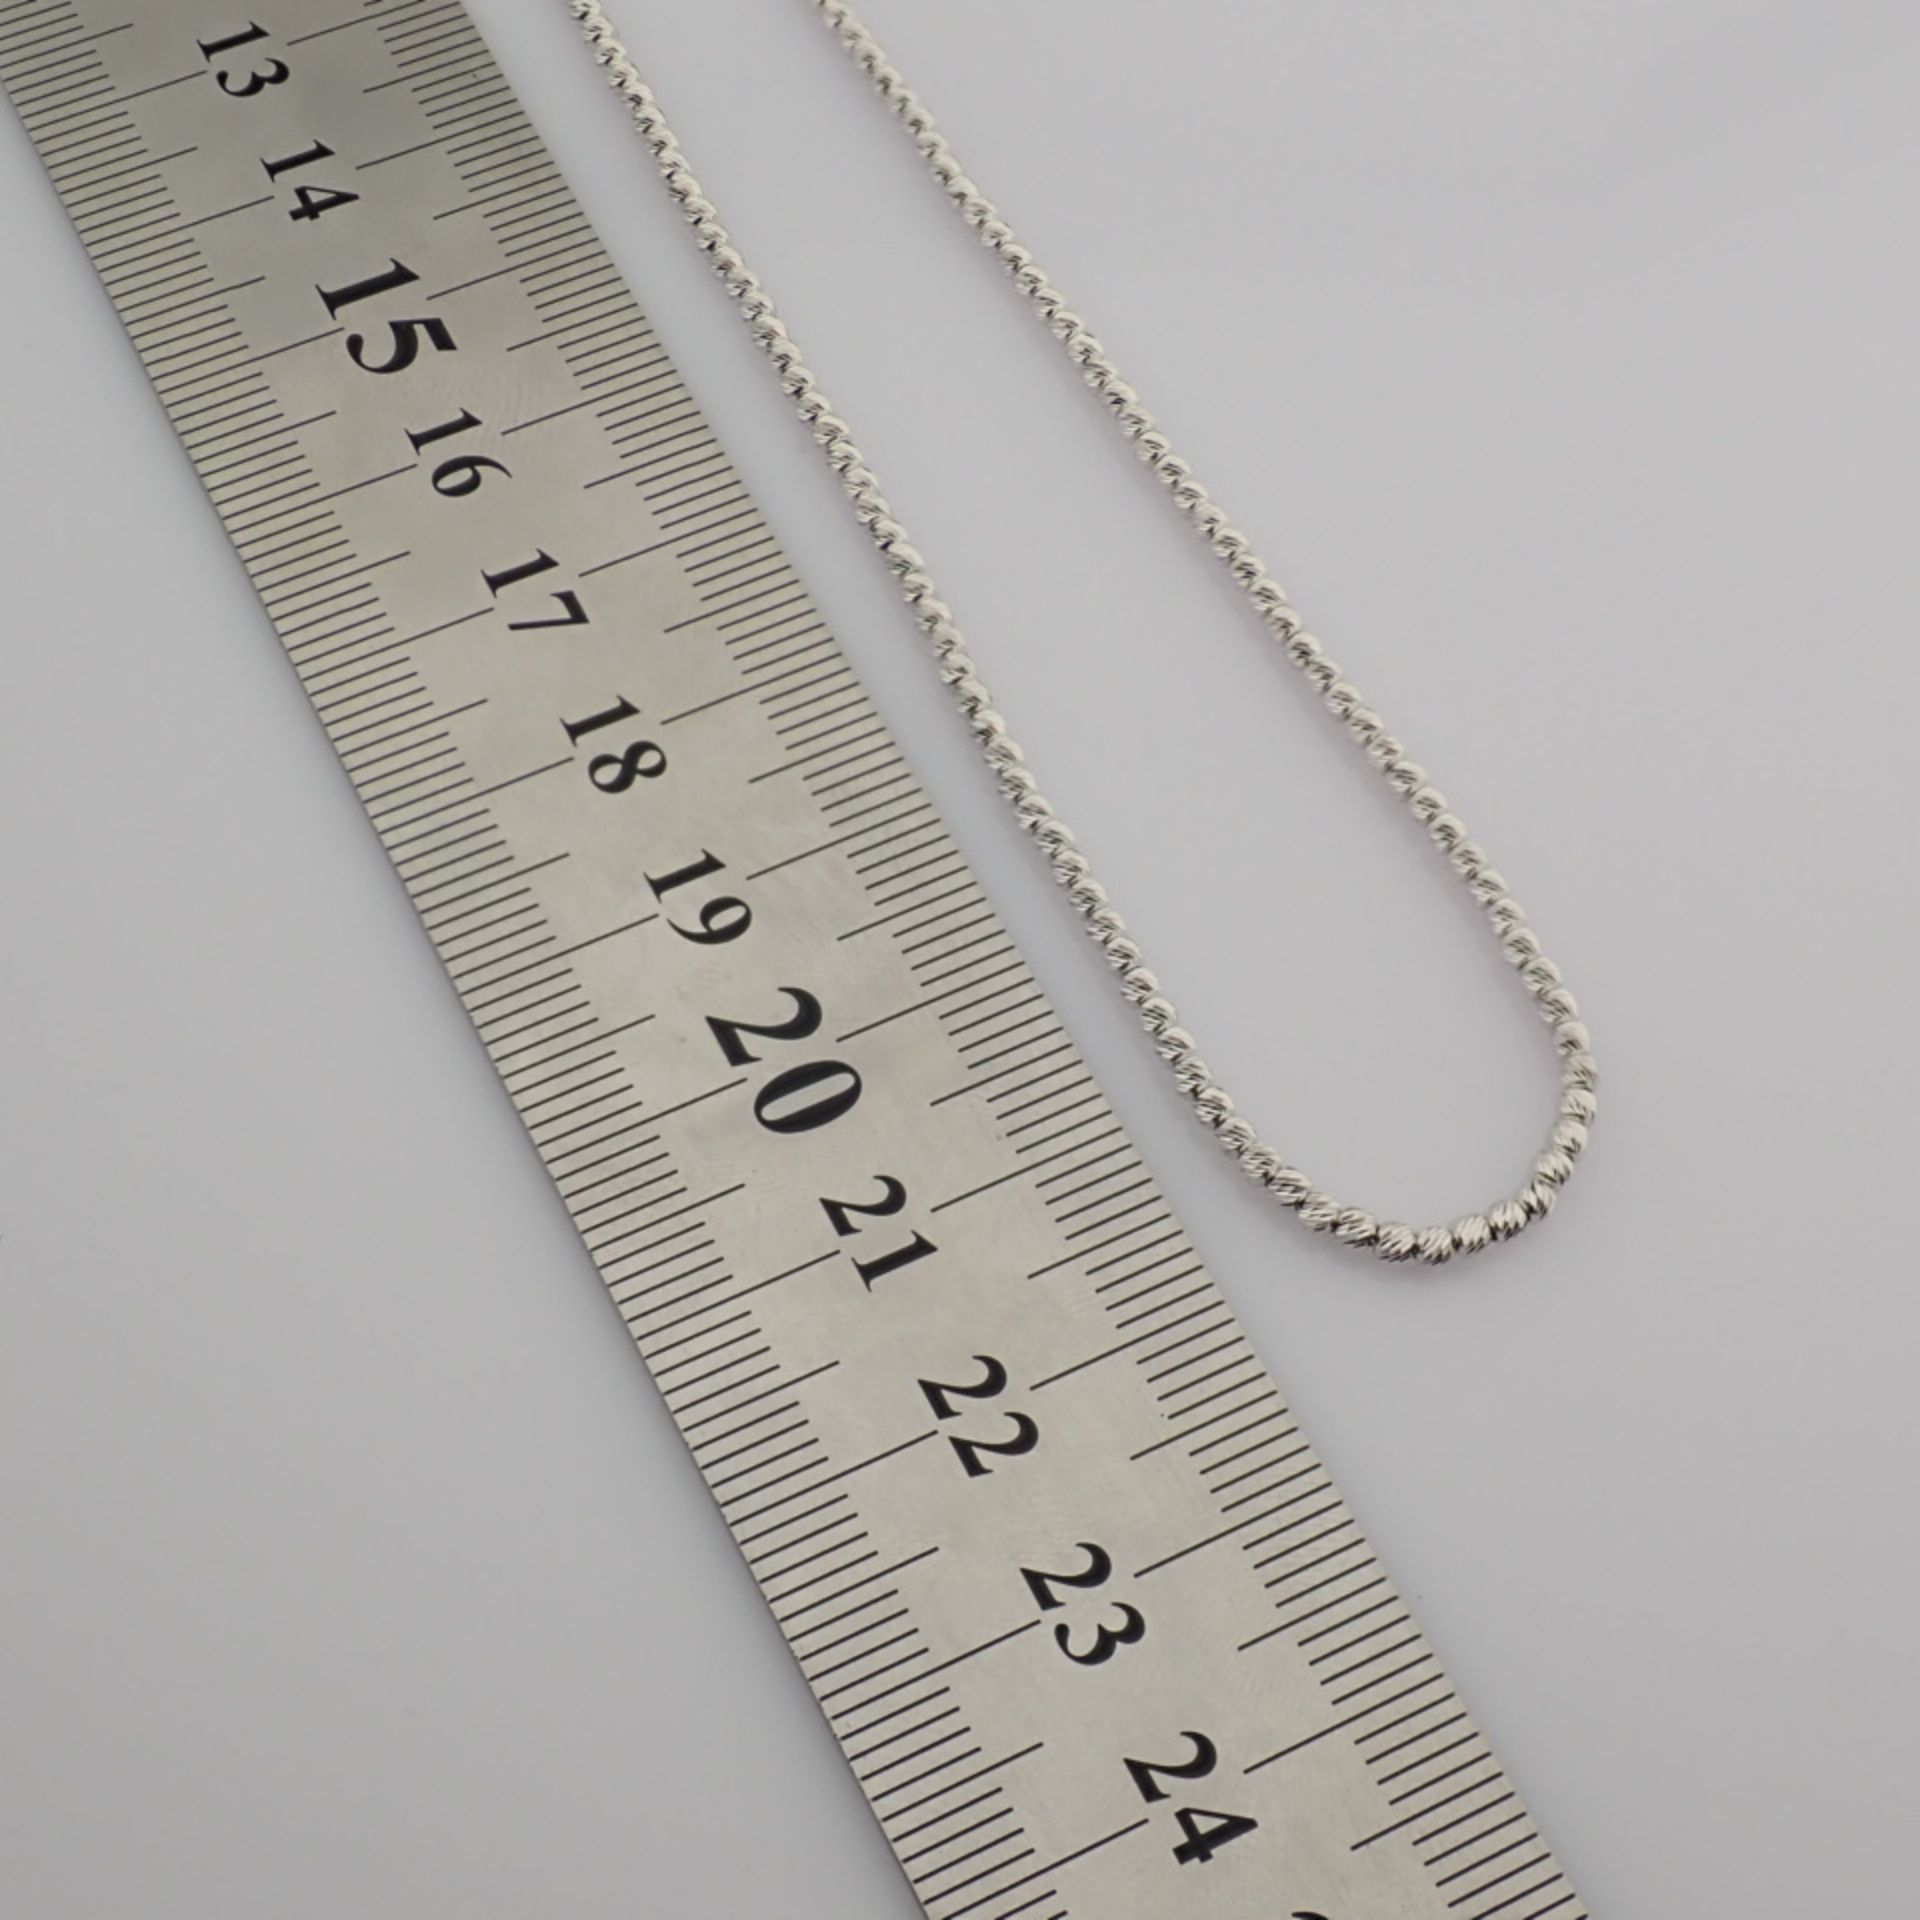 45 cm (17.7 in) Italian Beat Dorica Necklace. In 14K White Gold - Image 10 of 10